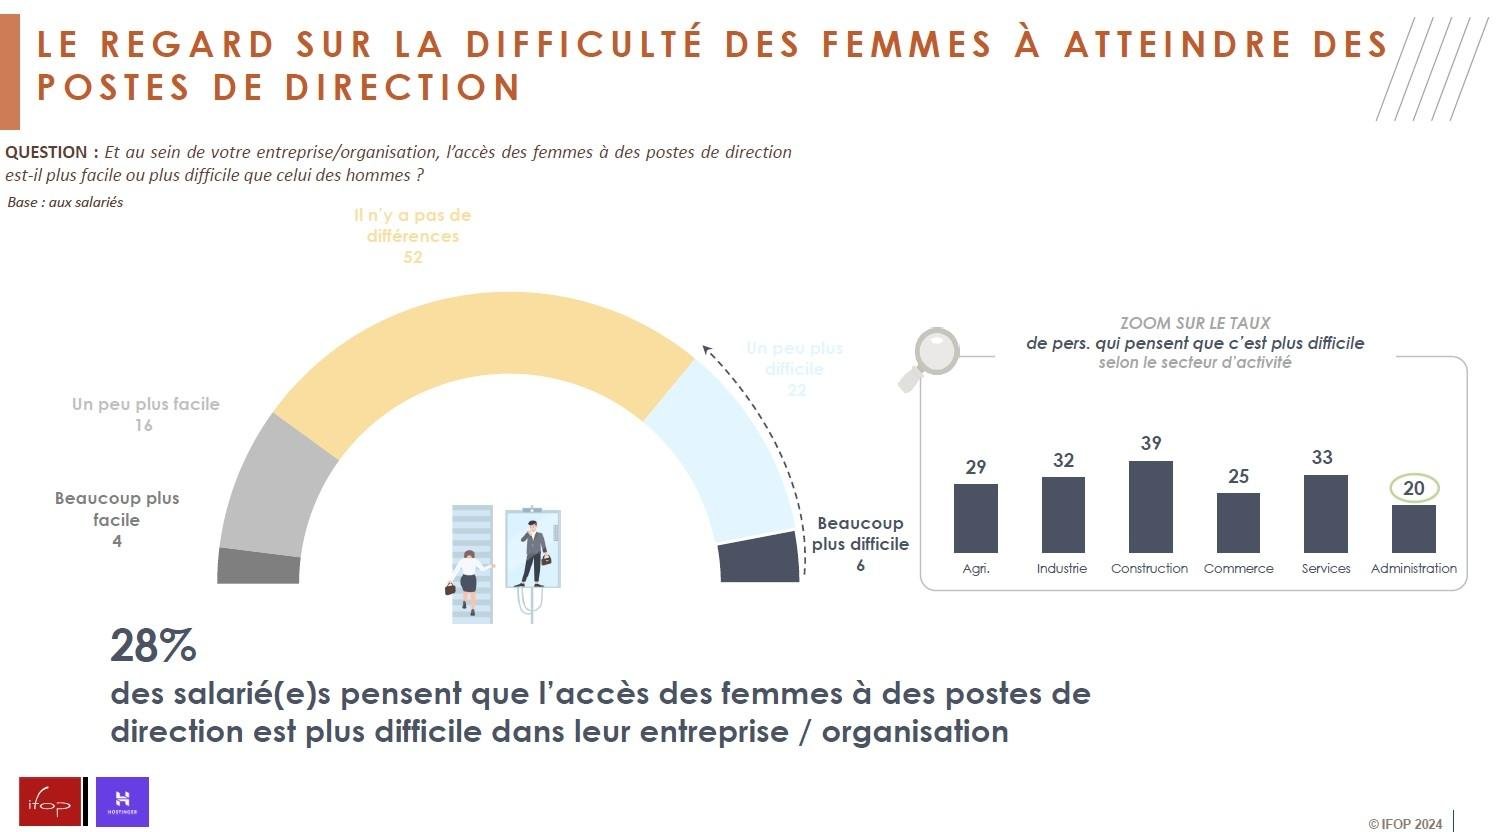 Infographie montrant la perception des répondants sur la difficulté des femmes d'accéder à des postes de direction.